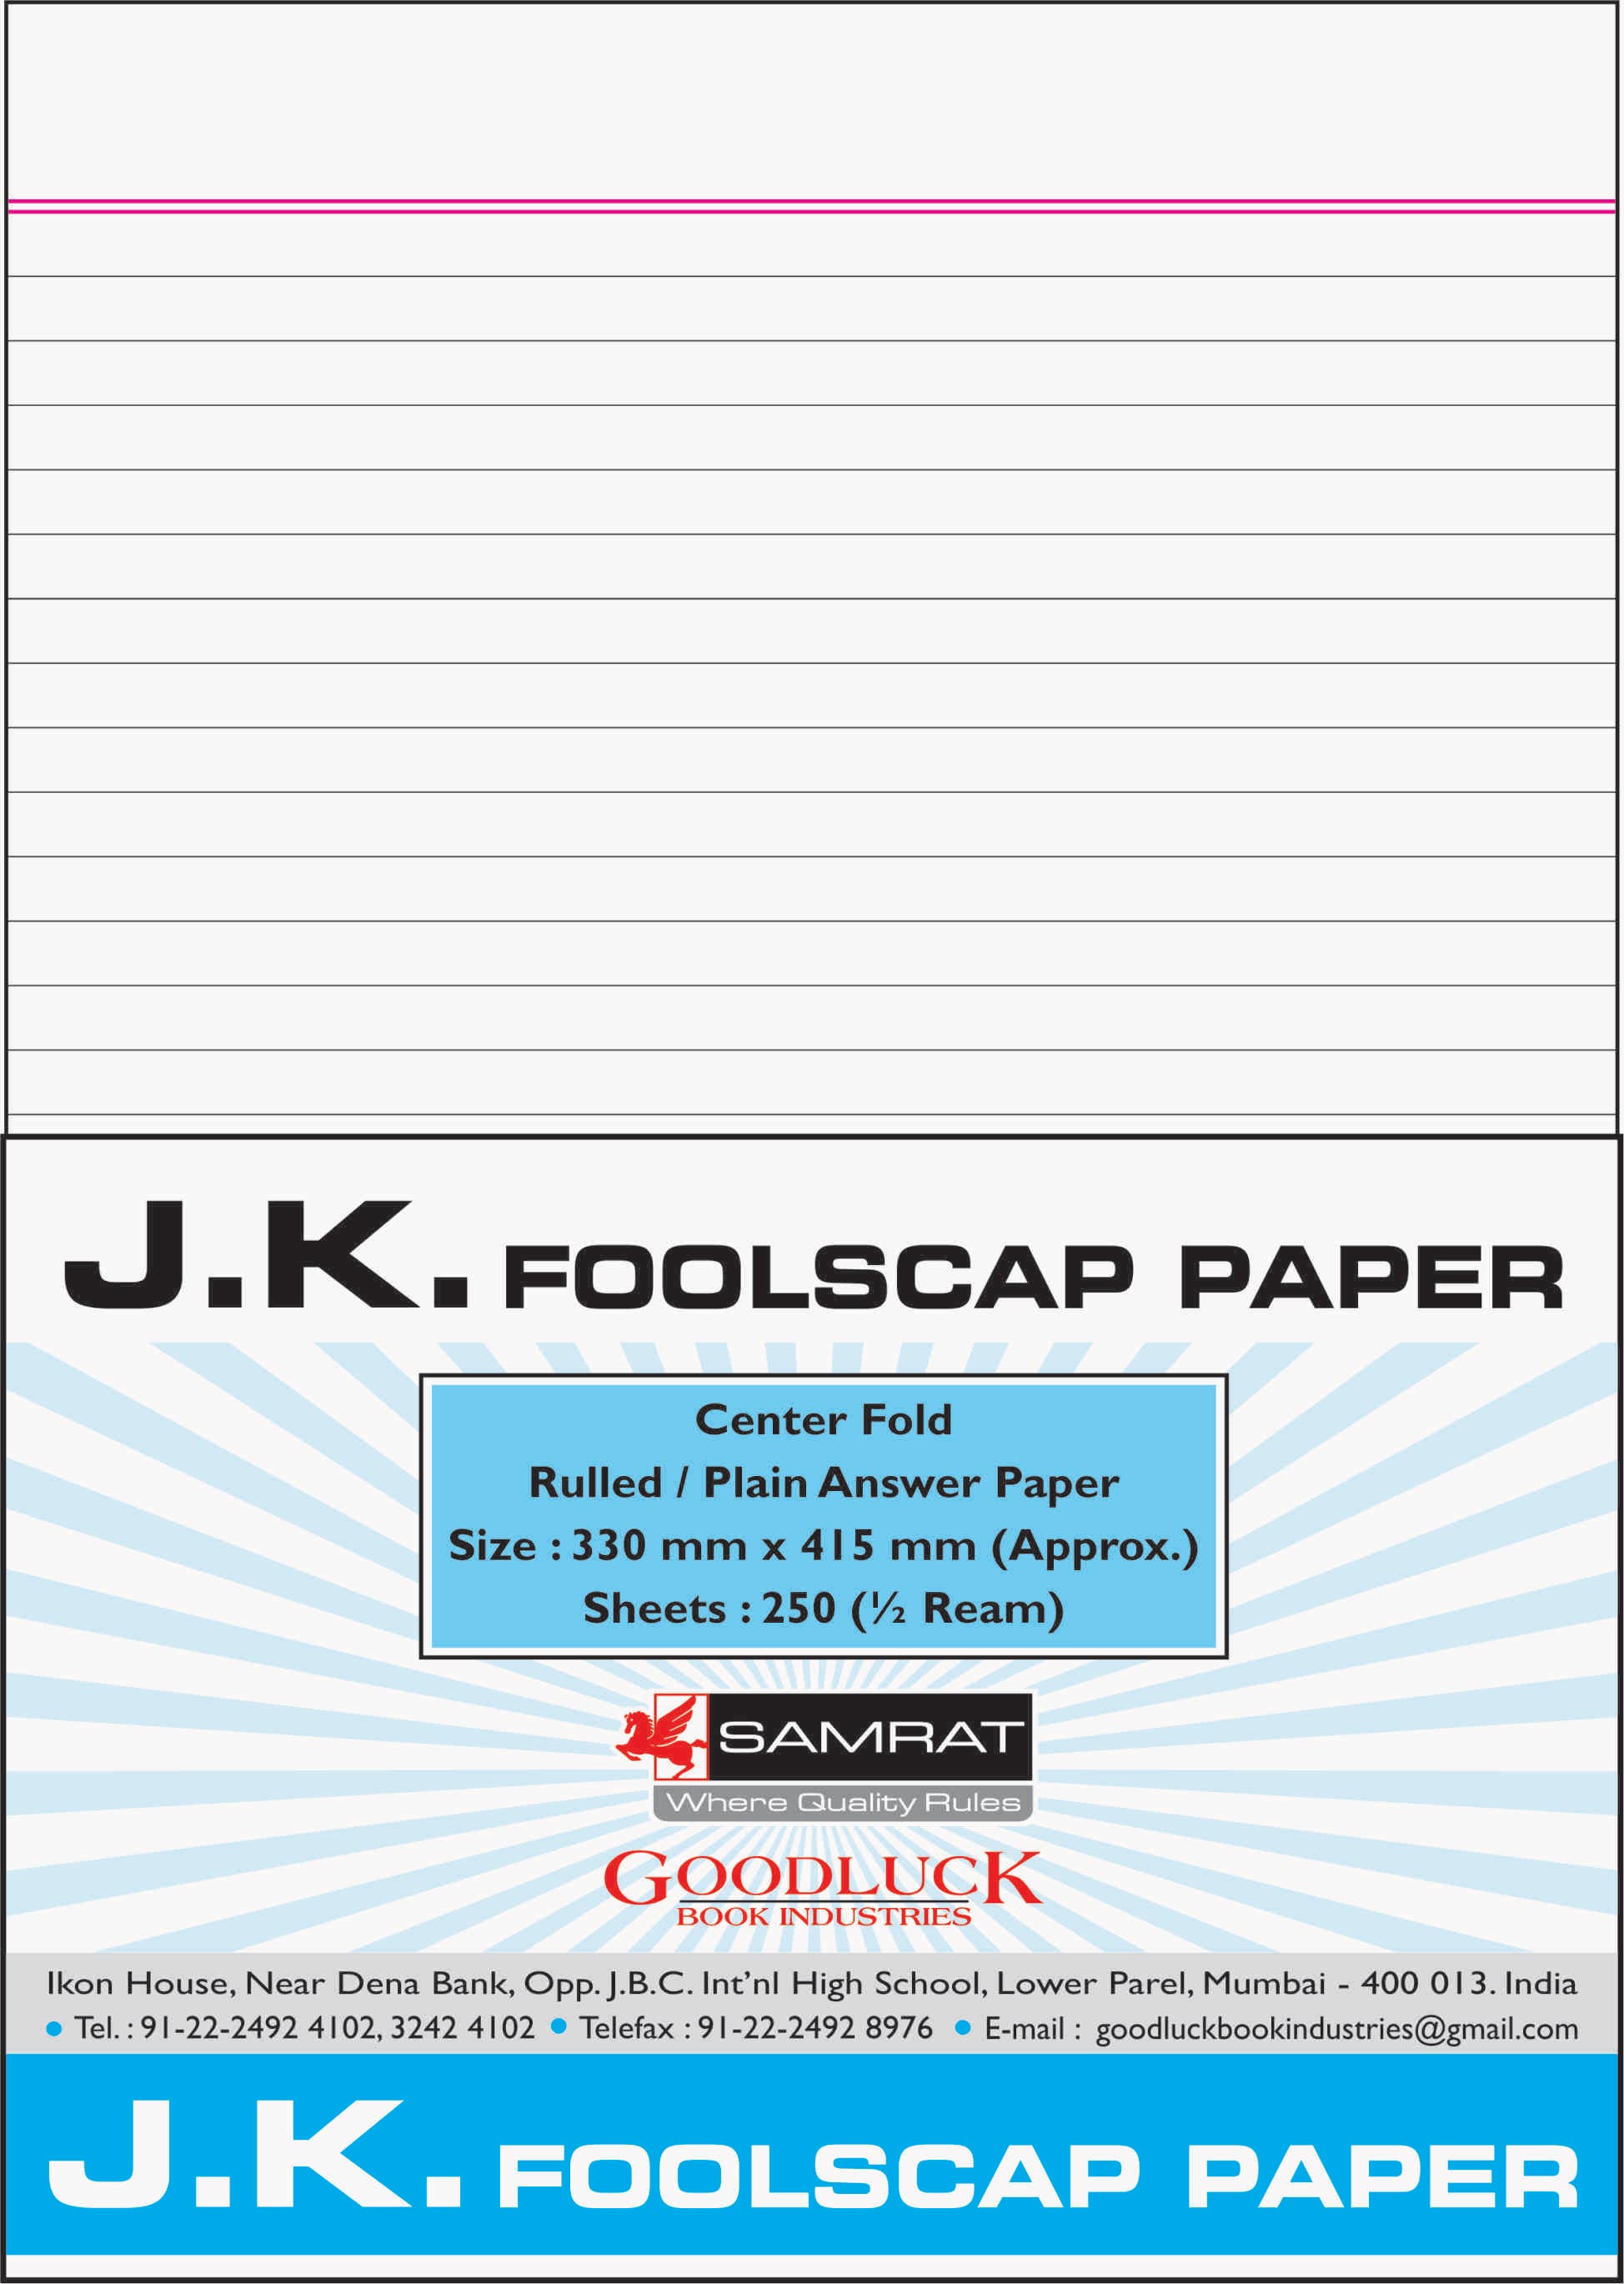 J.K. Foolscap Paper